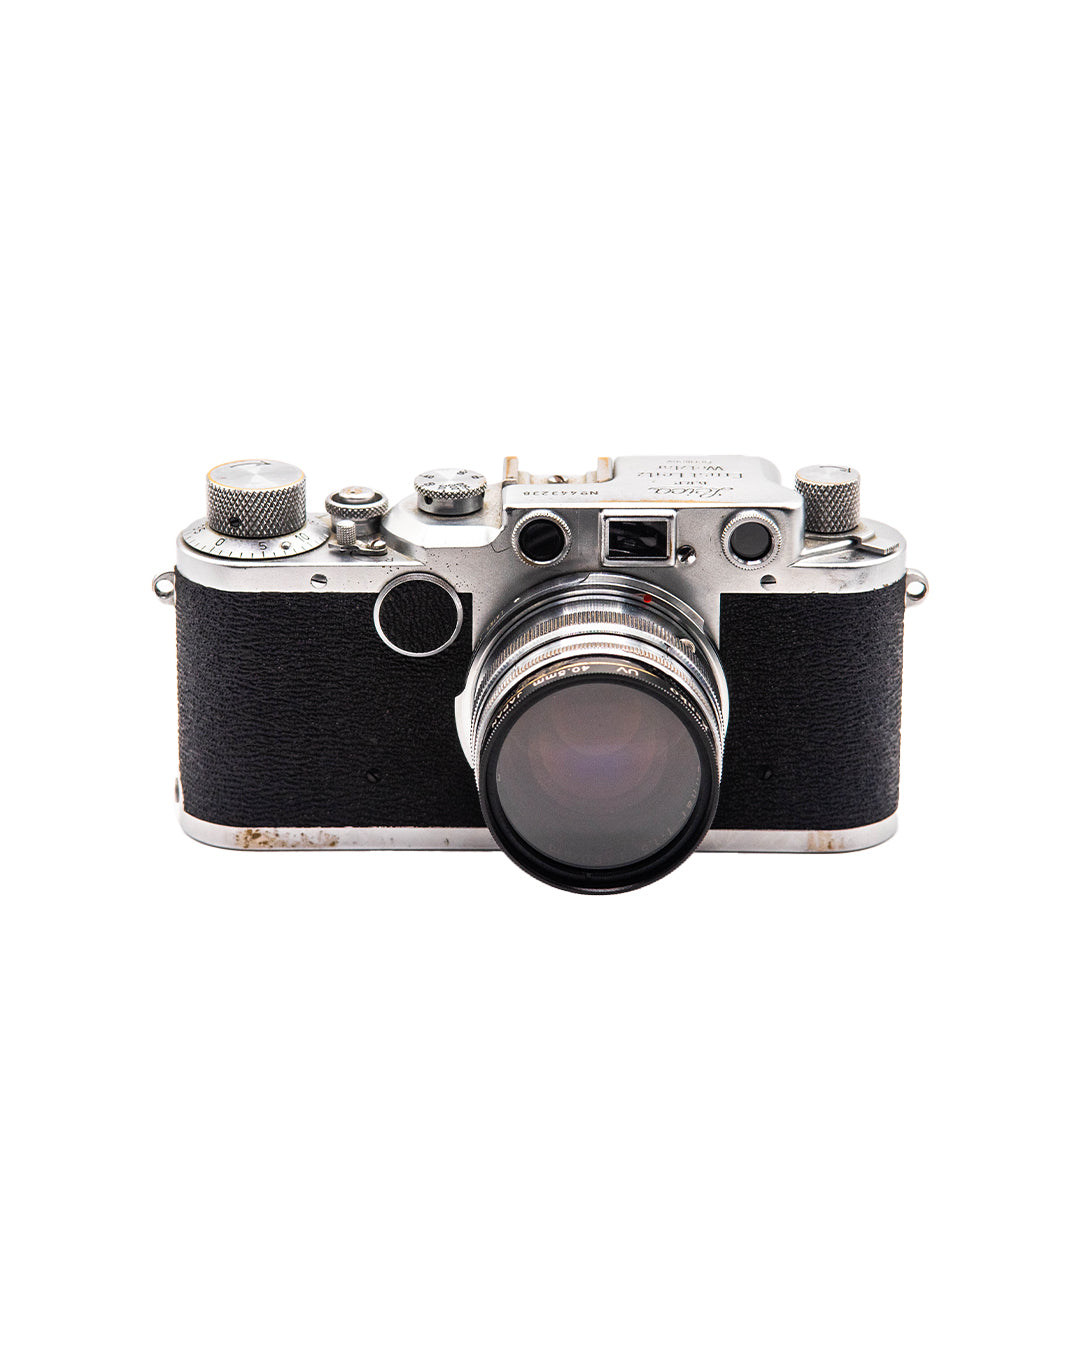 Leica DRP Rangefinder Ernst Leitz Wetzlar Camera with Zeiss Sonnar 50mm F/1.5 Lens